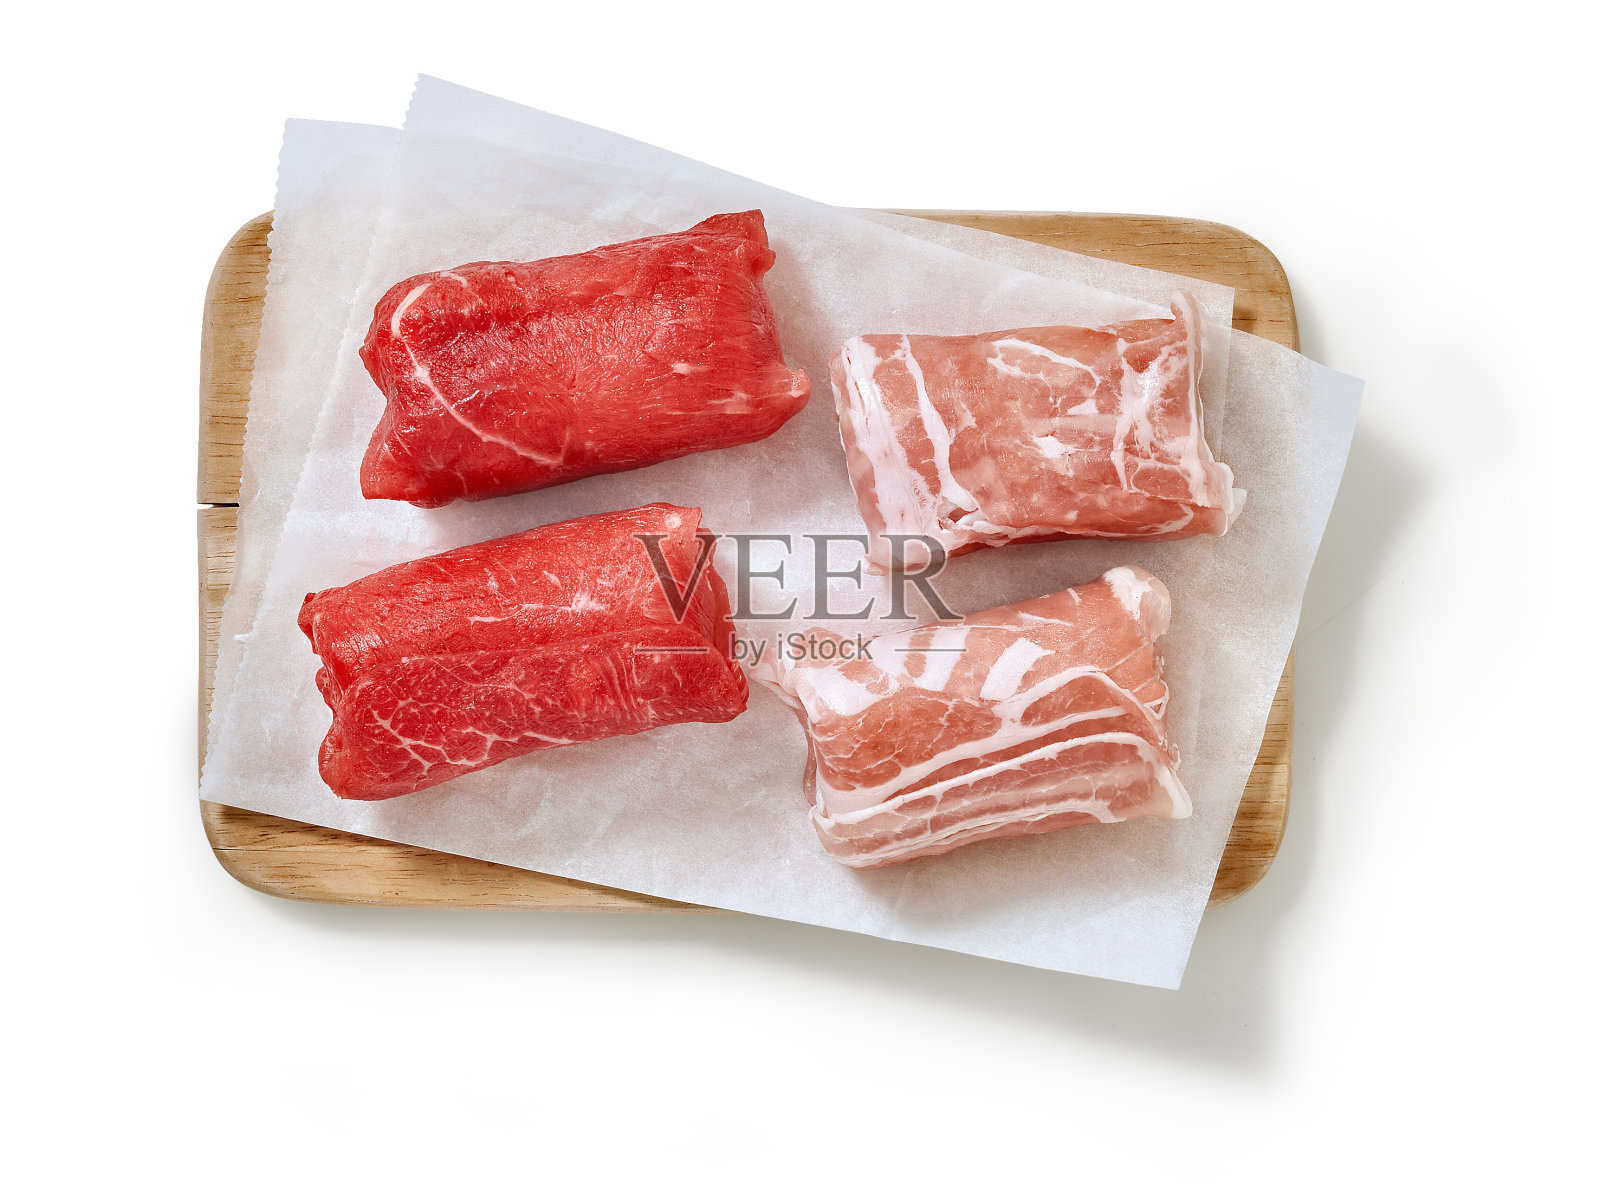 Slavink是一道荷兰肉菜，通常由绞碎的肉“一半和一半”(一半牛肉，一半猪肉)包裹在培根里照片摄影图片